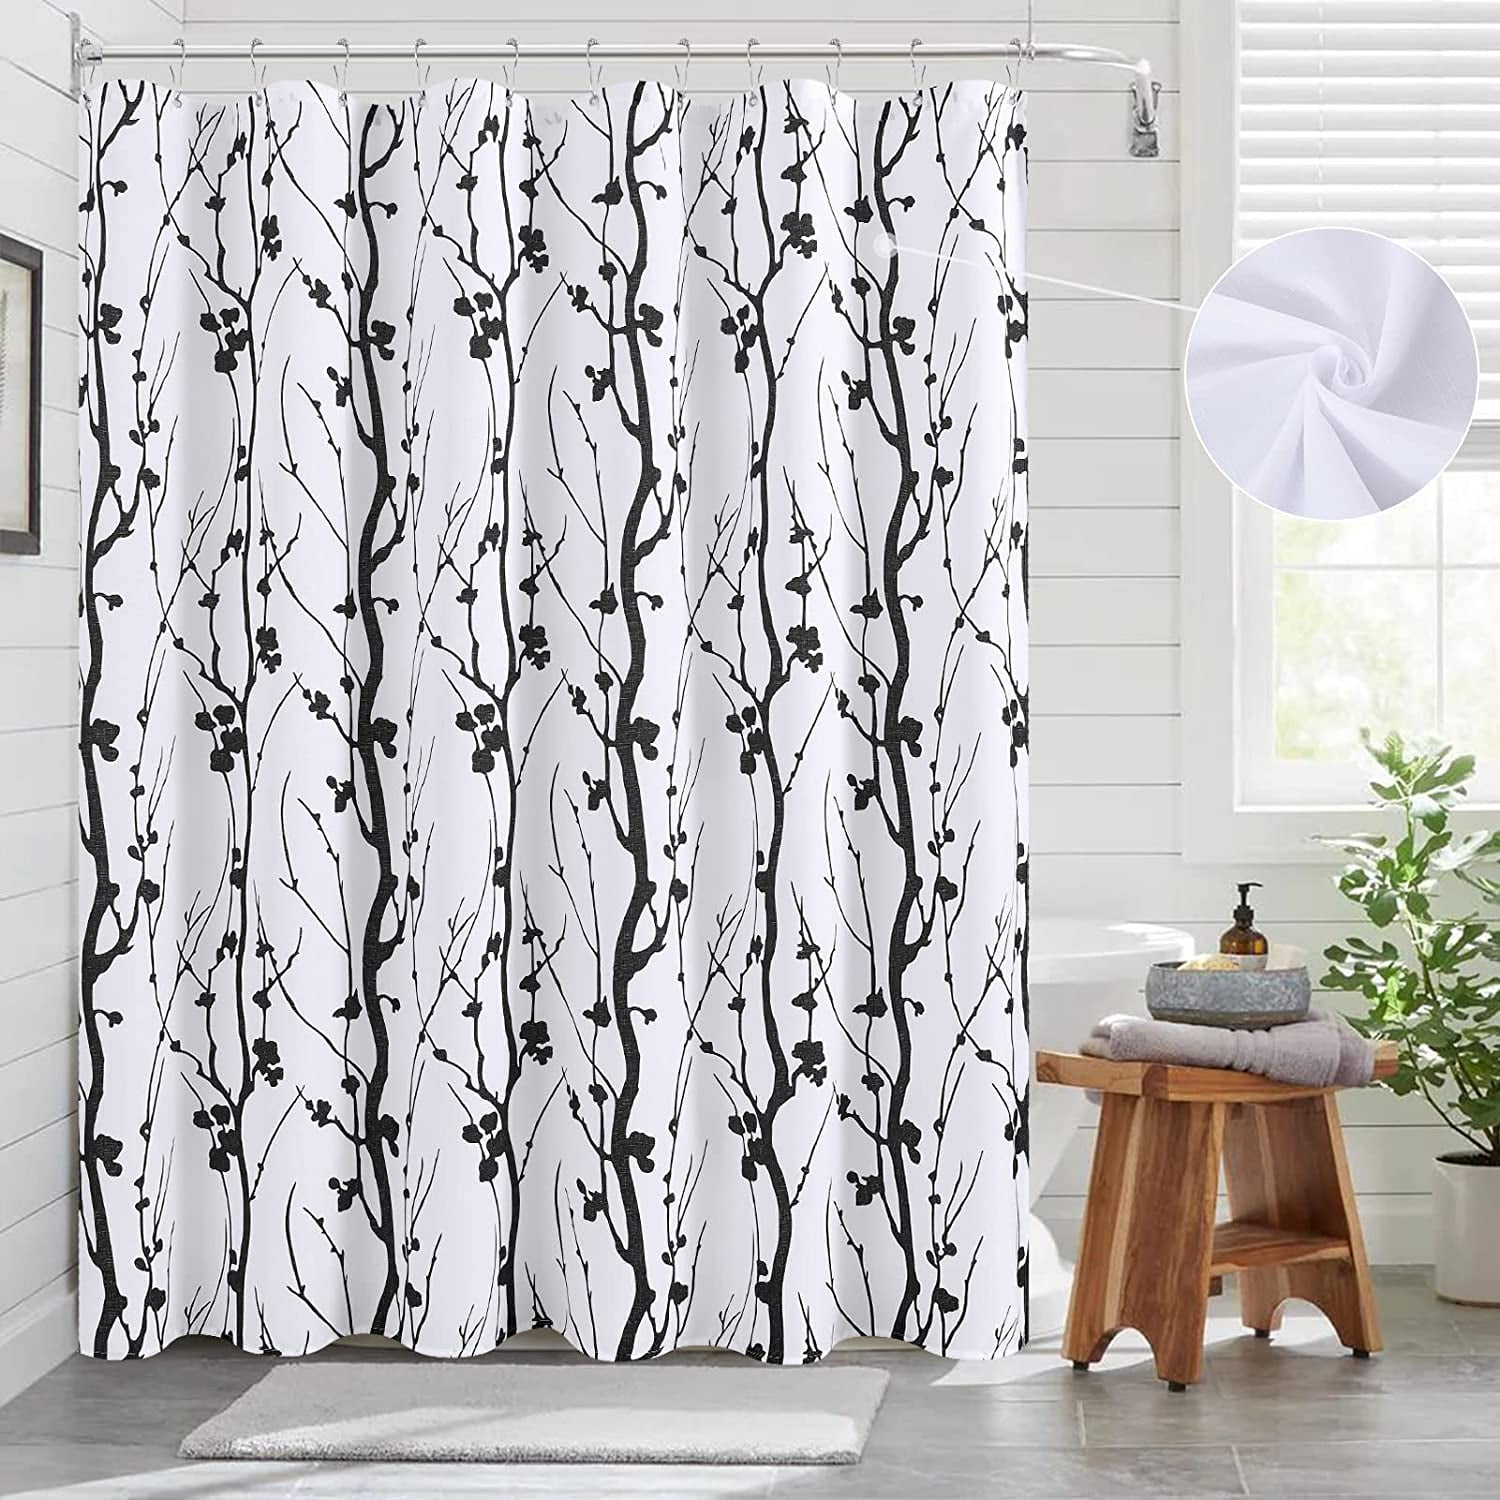 Modern Pop Art Girl Shower Curtain Vibrant Fun Cool White Weird Bathroom  Decor Bath Shower Curtain Accessories 